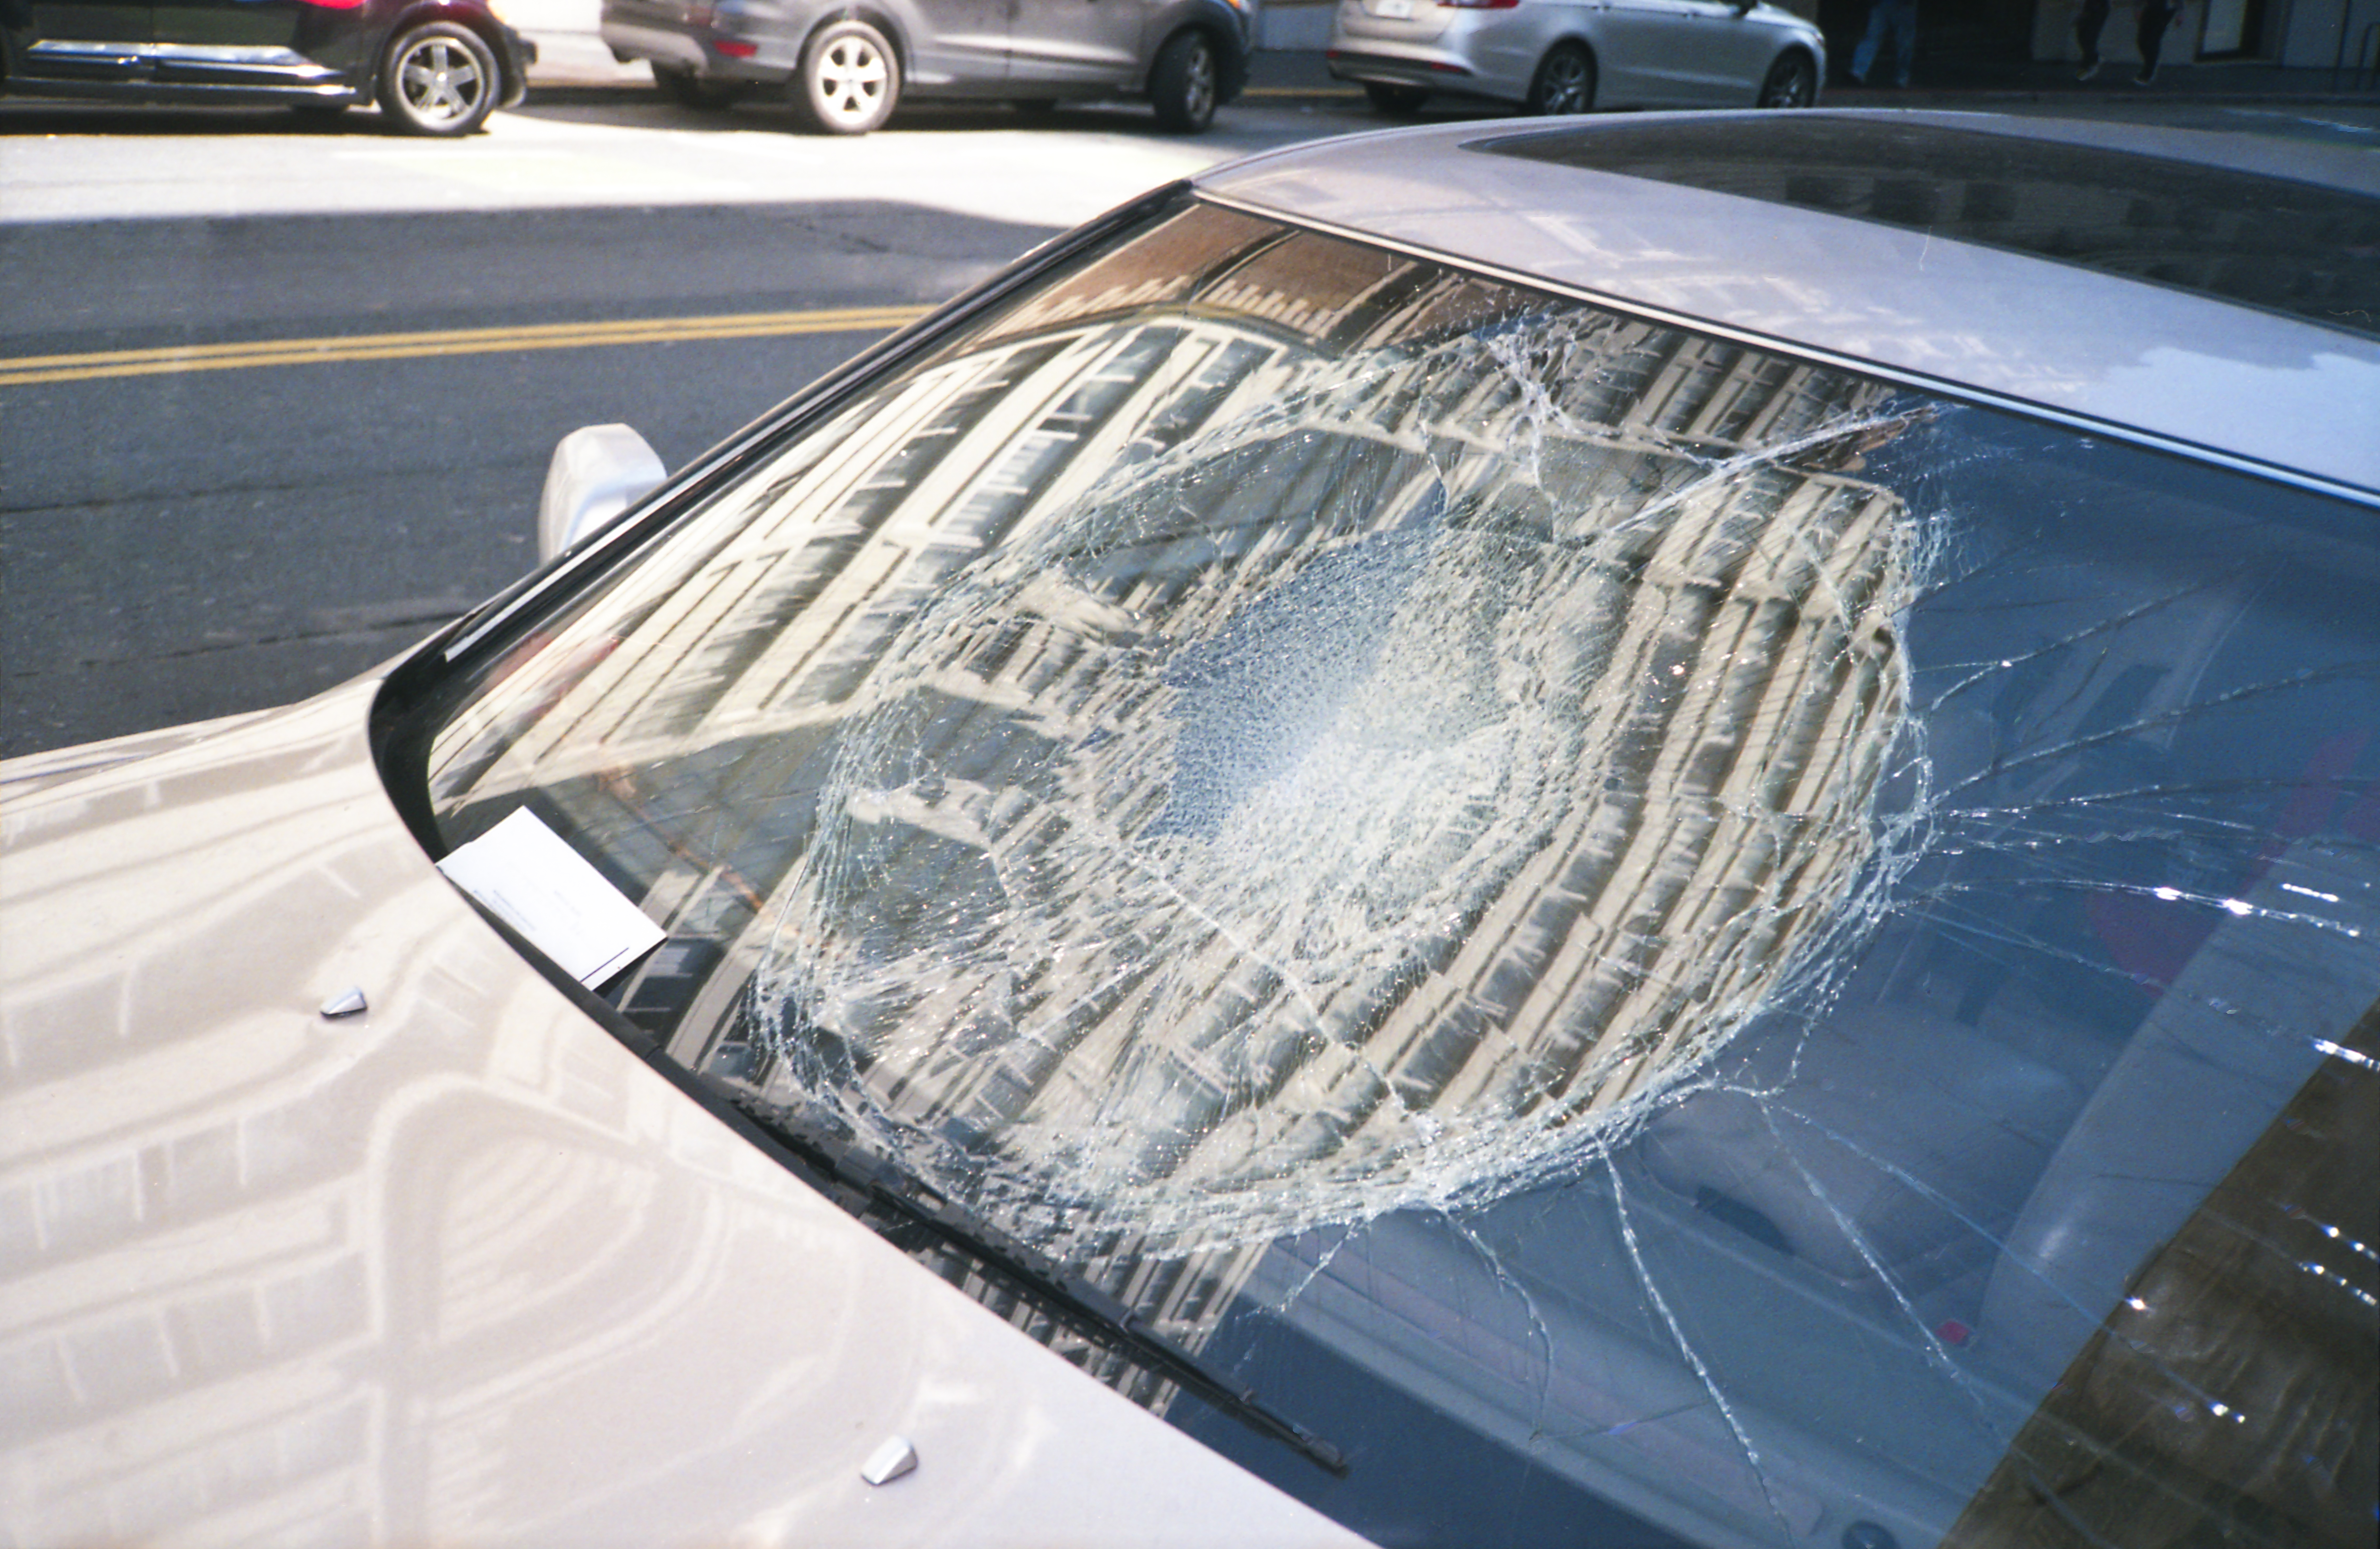 Asuransi kendaraan all risk akan mengganti kerugian atas kerusakan secara menyeluruh